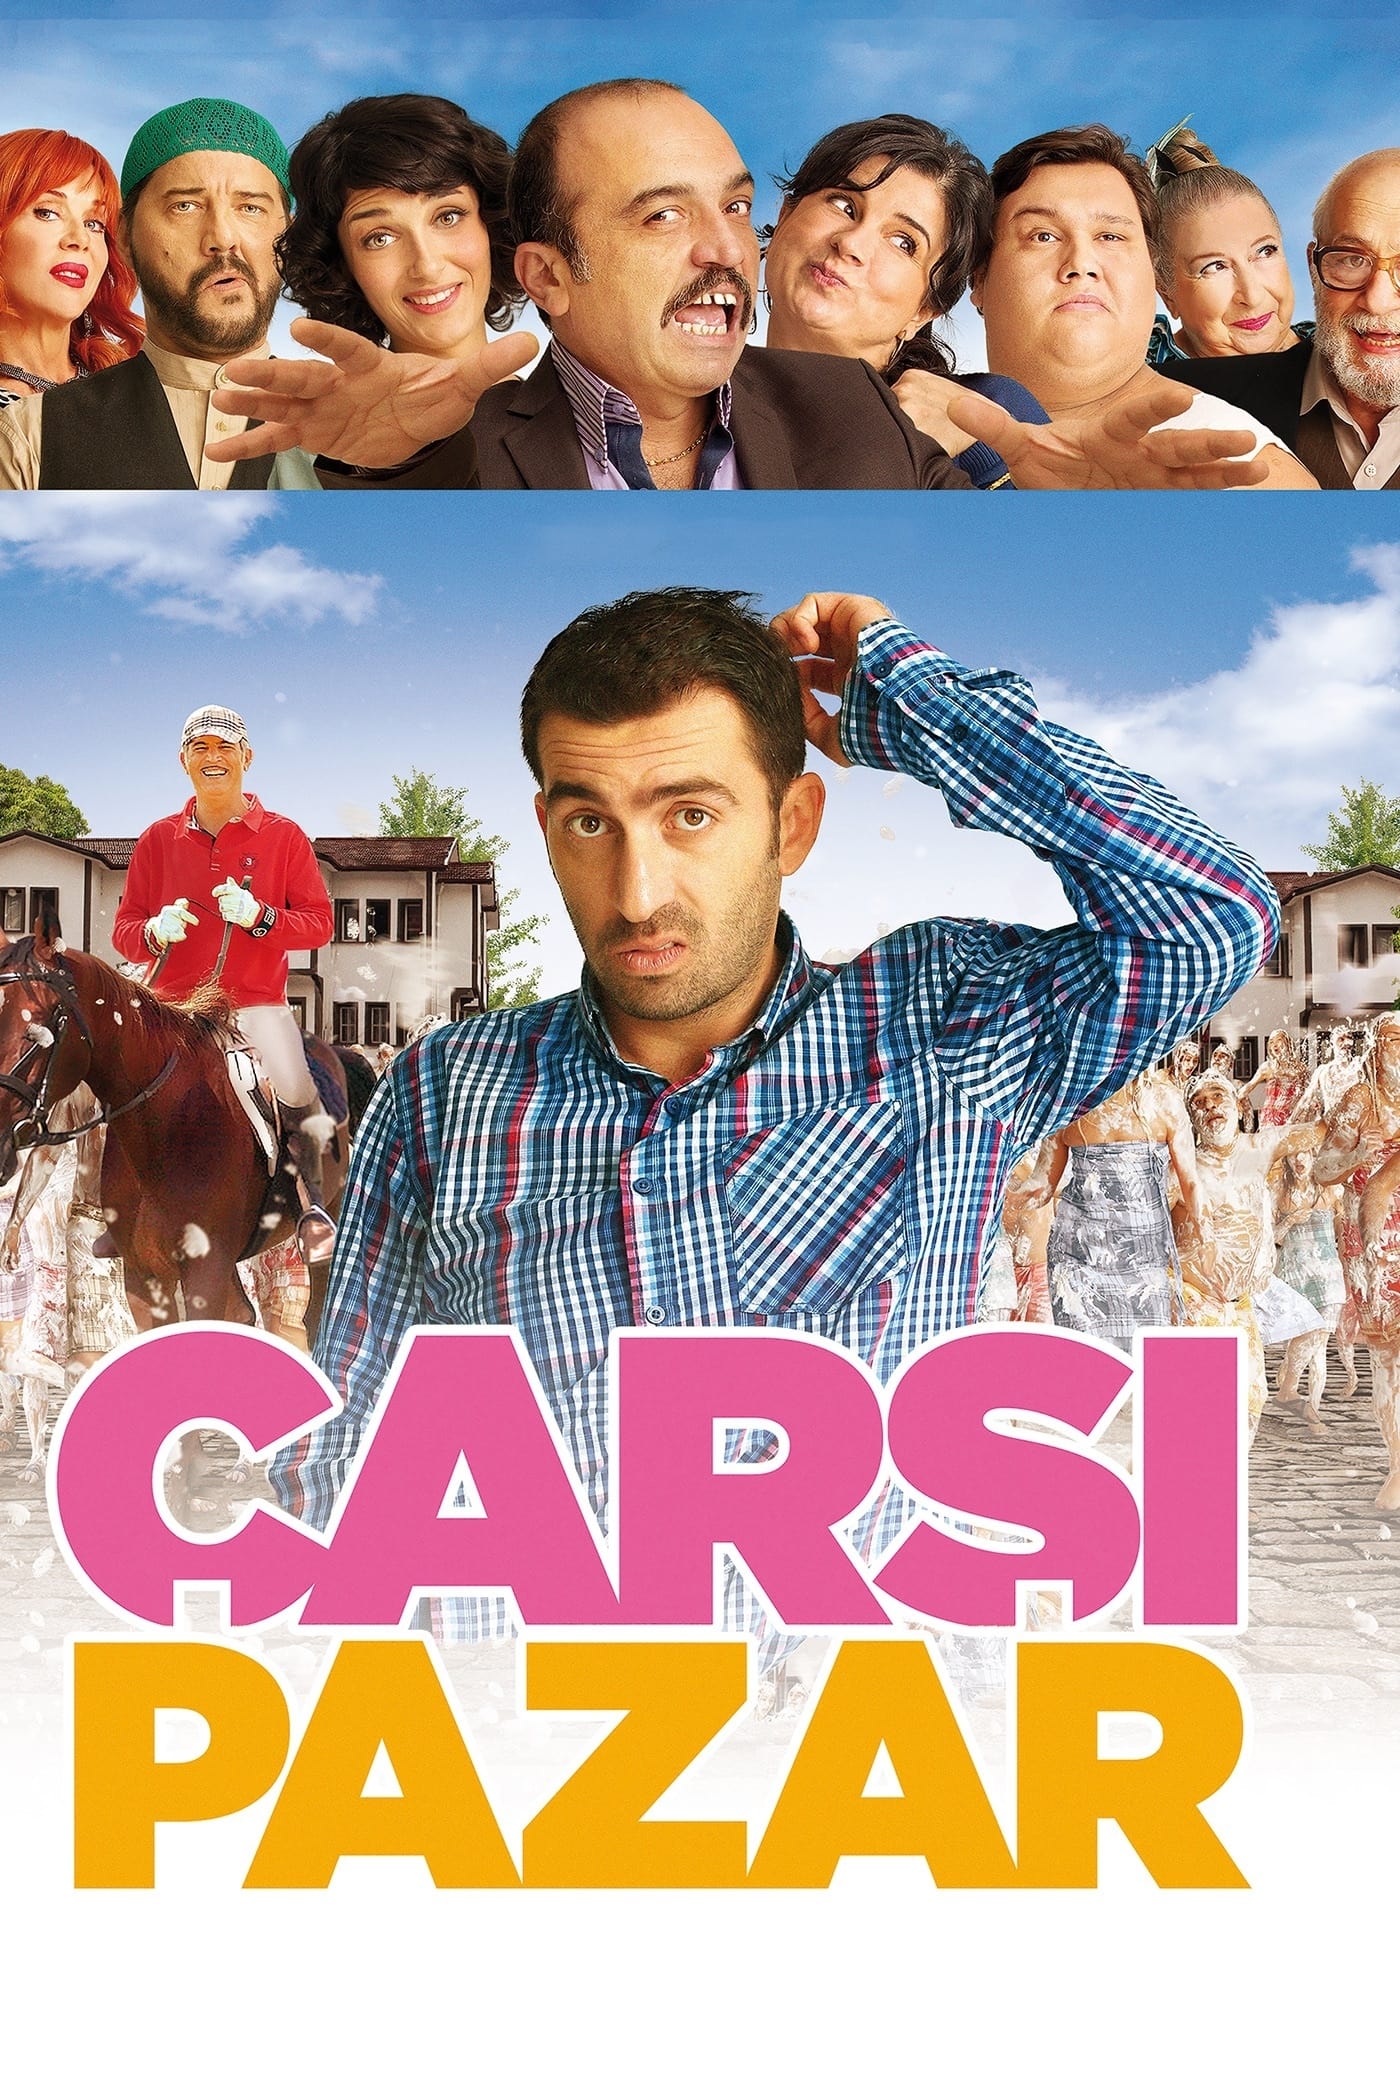 souk bazaar 2015 movie where to watch streaming online plot